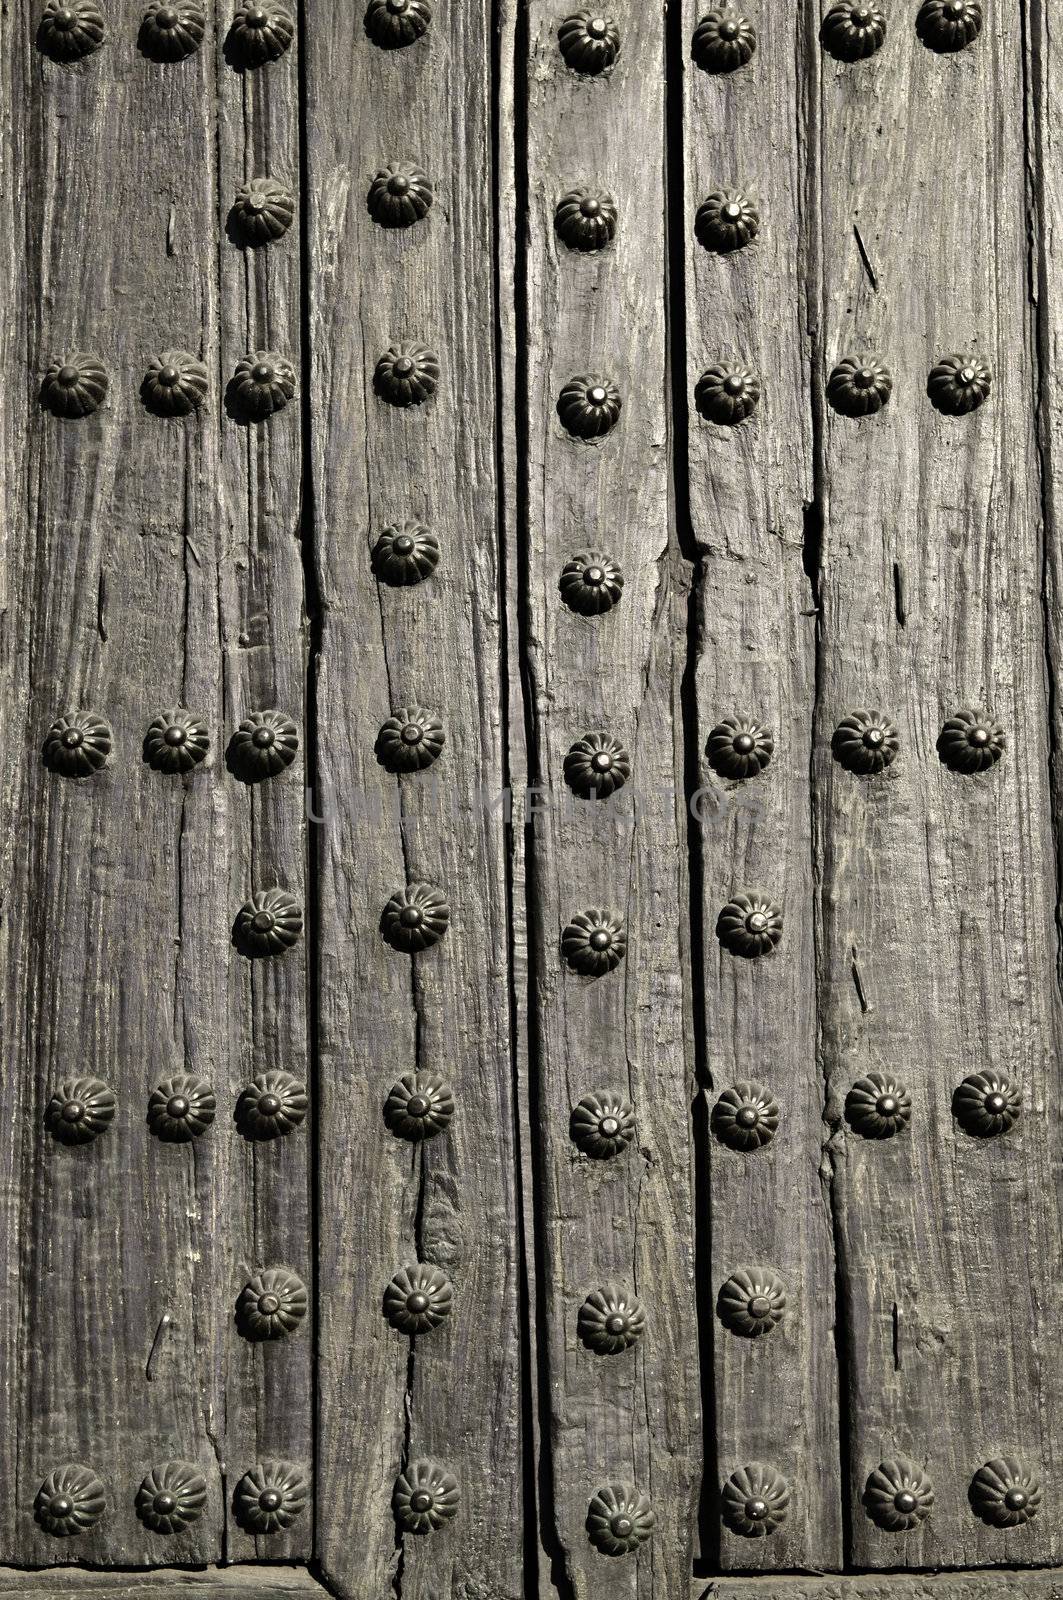 Background of old wooden door with metal studs